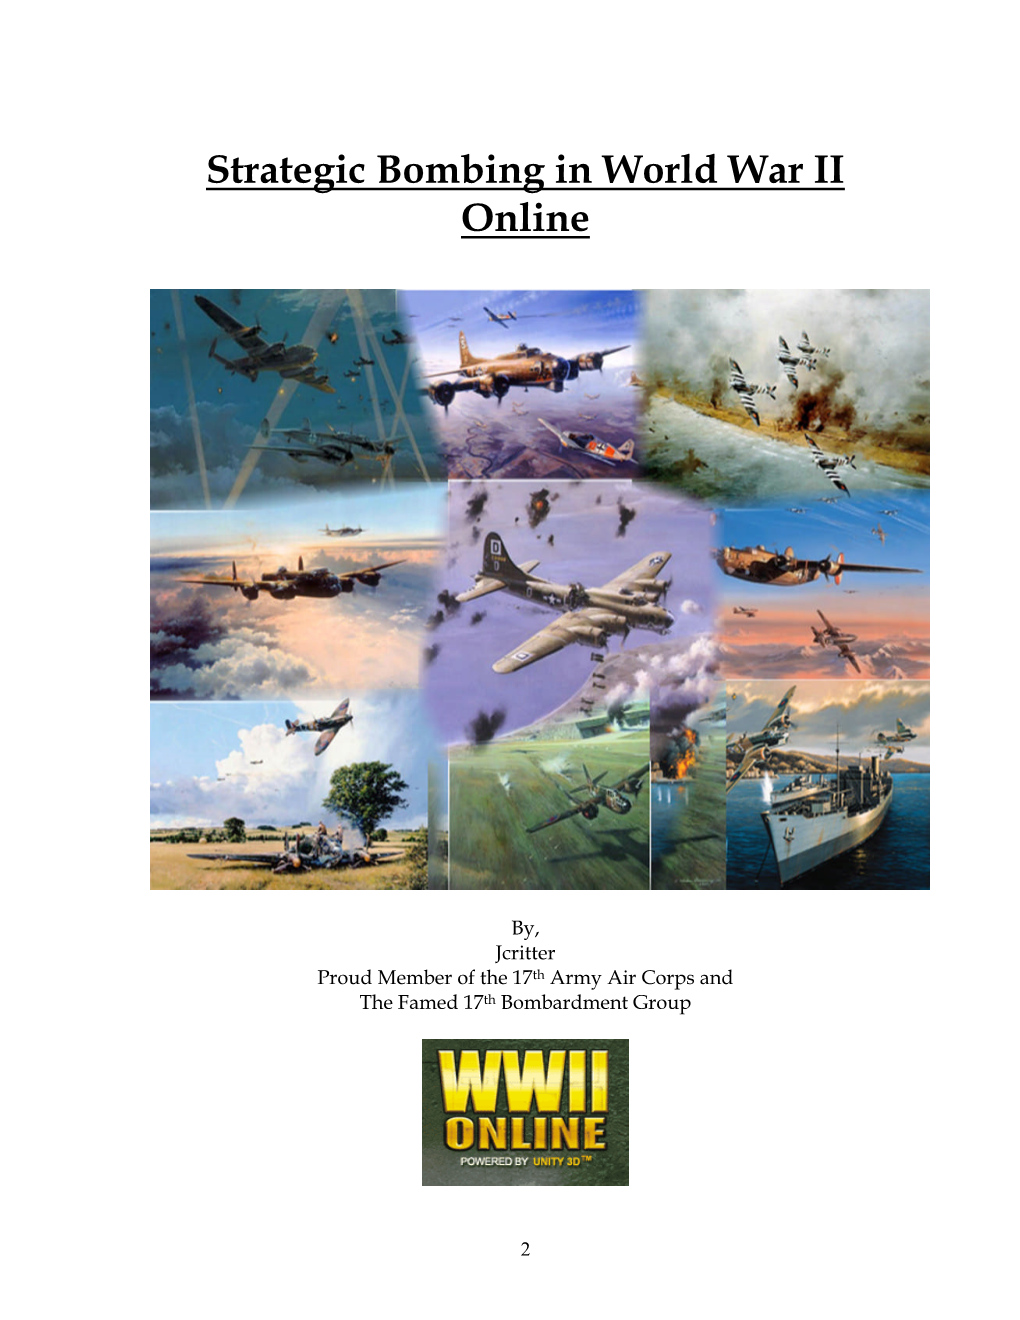 Strategic Bombing in World War II Online